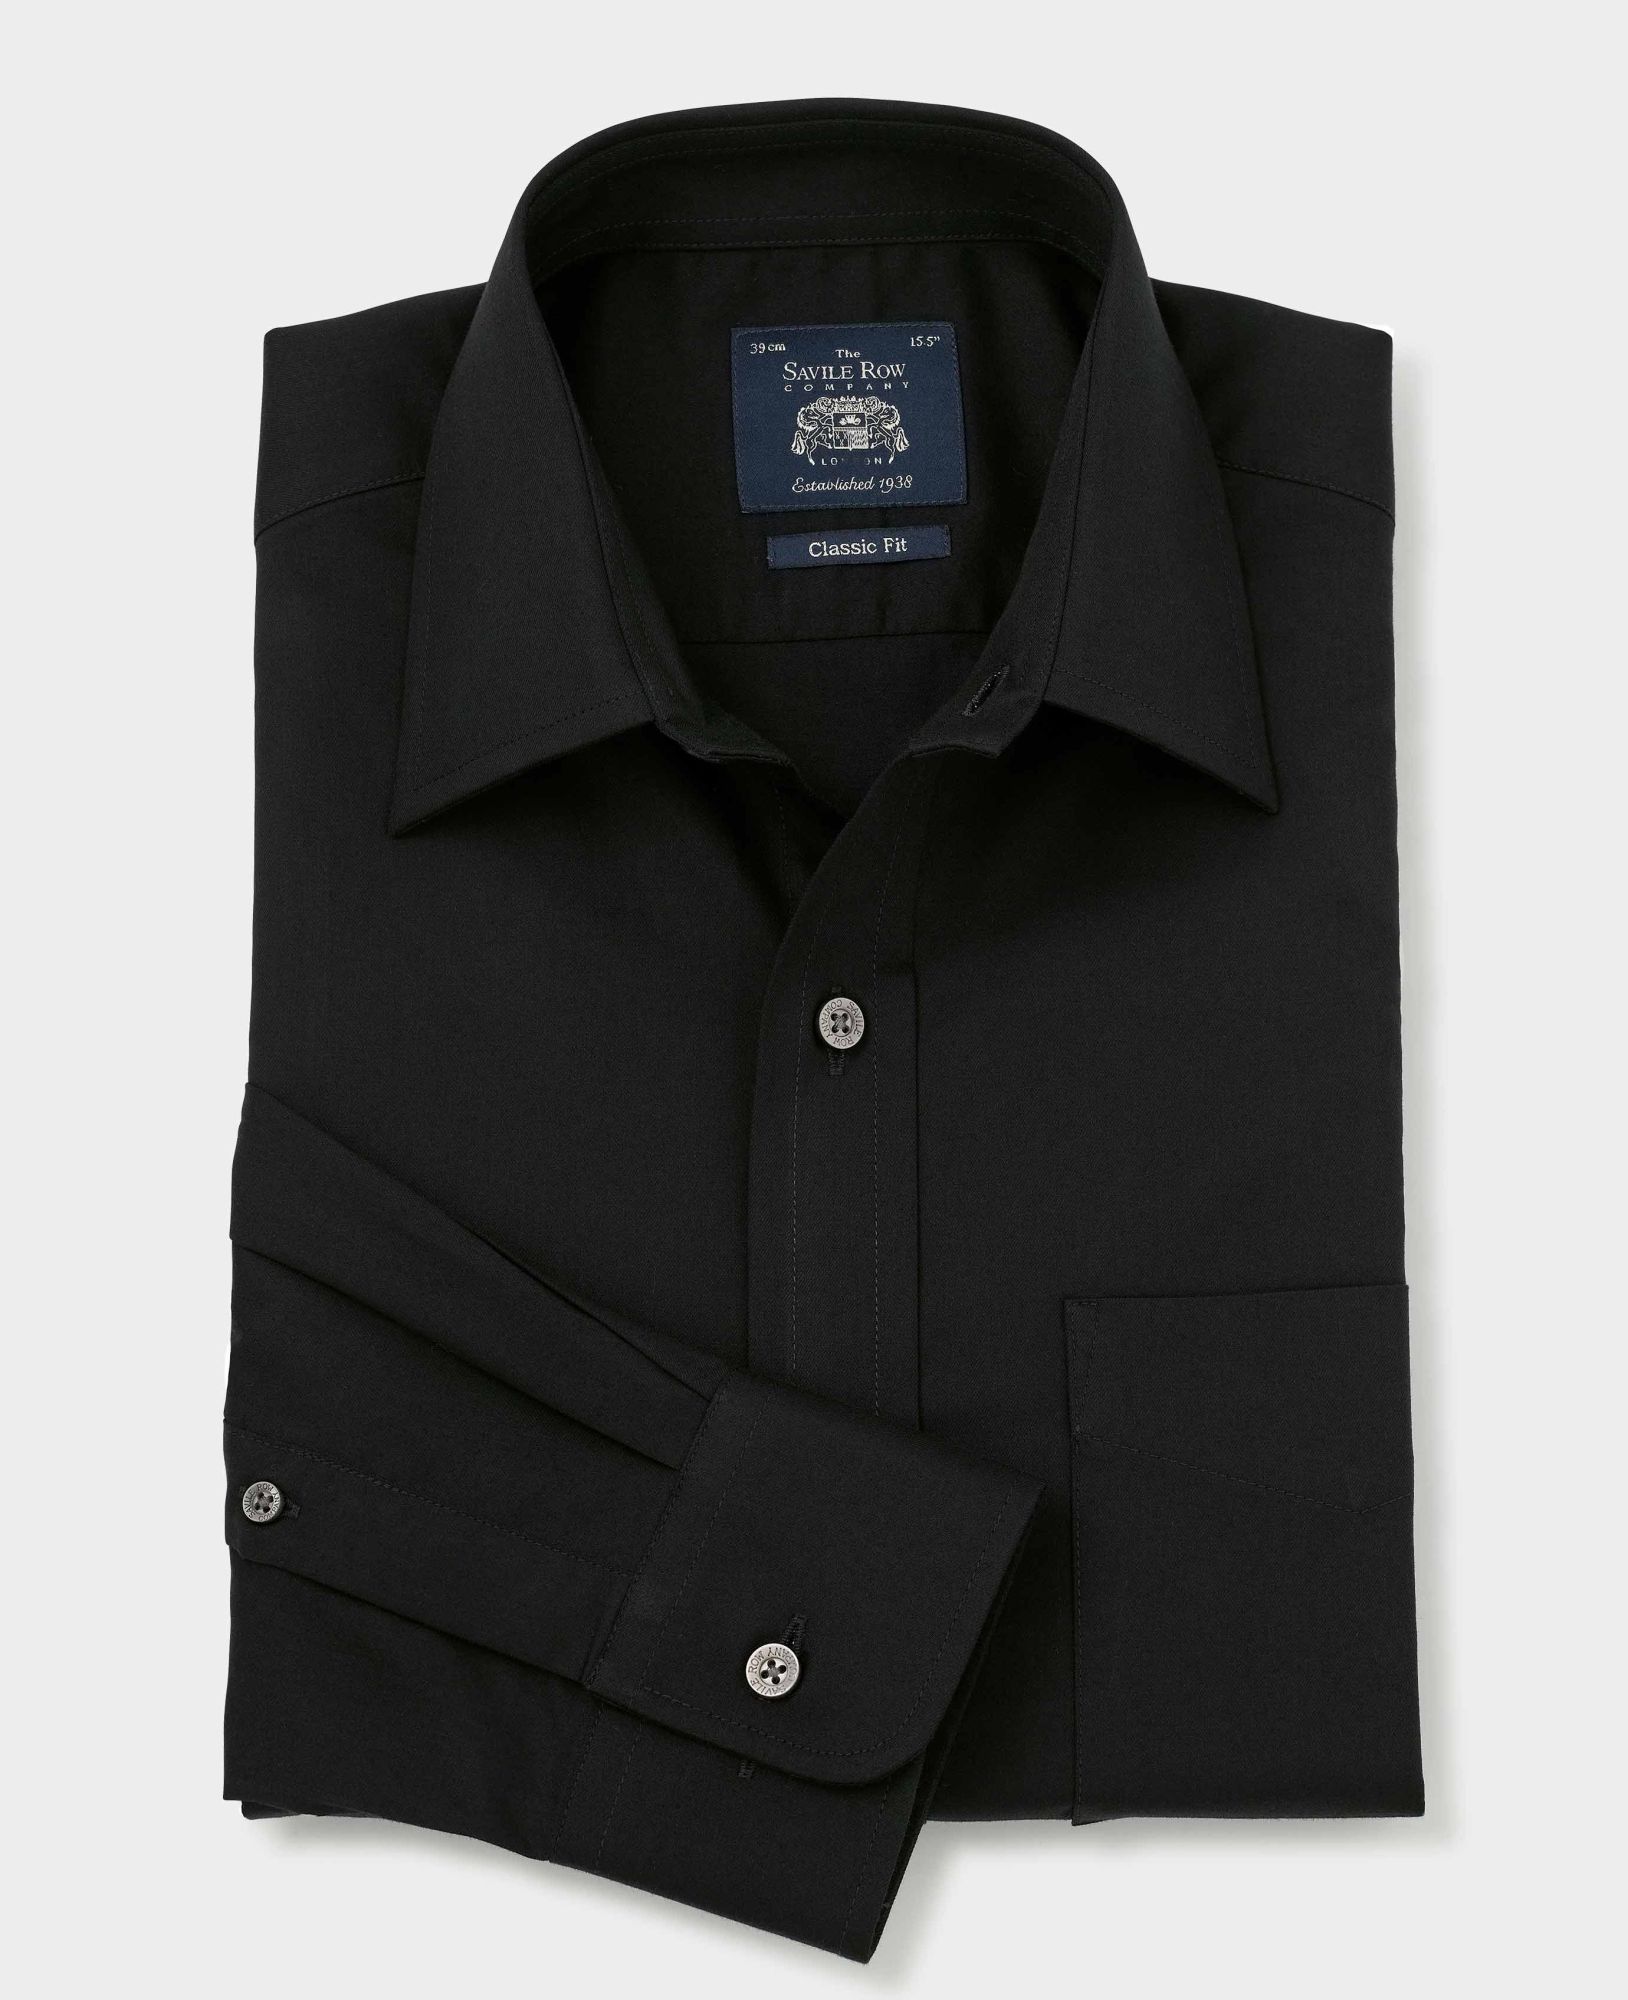 Black Fine Twill Classic Fit Shirt - Single Cuff 15 1/2